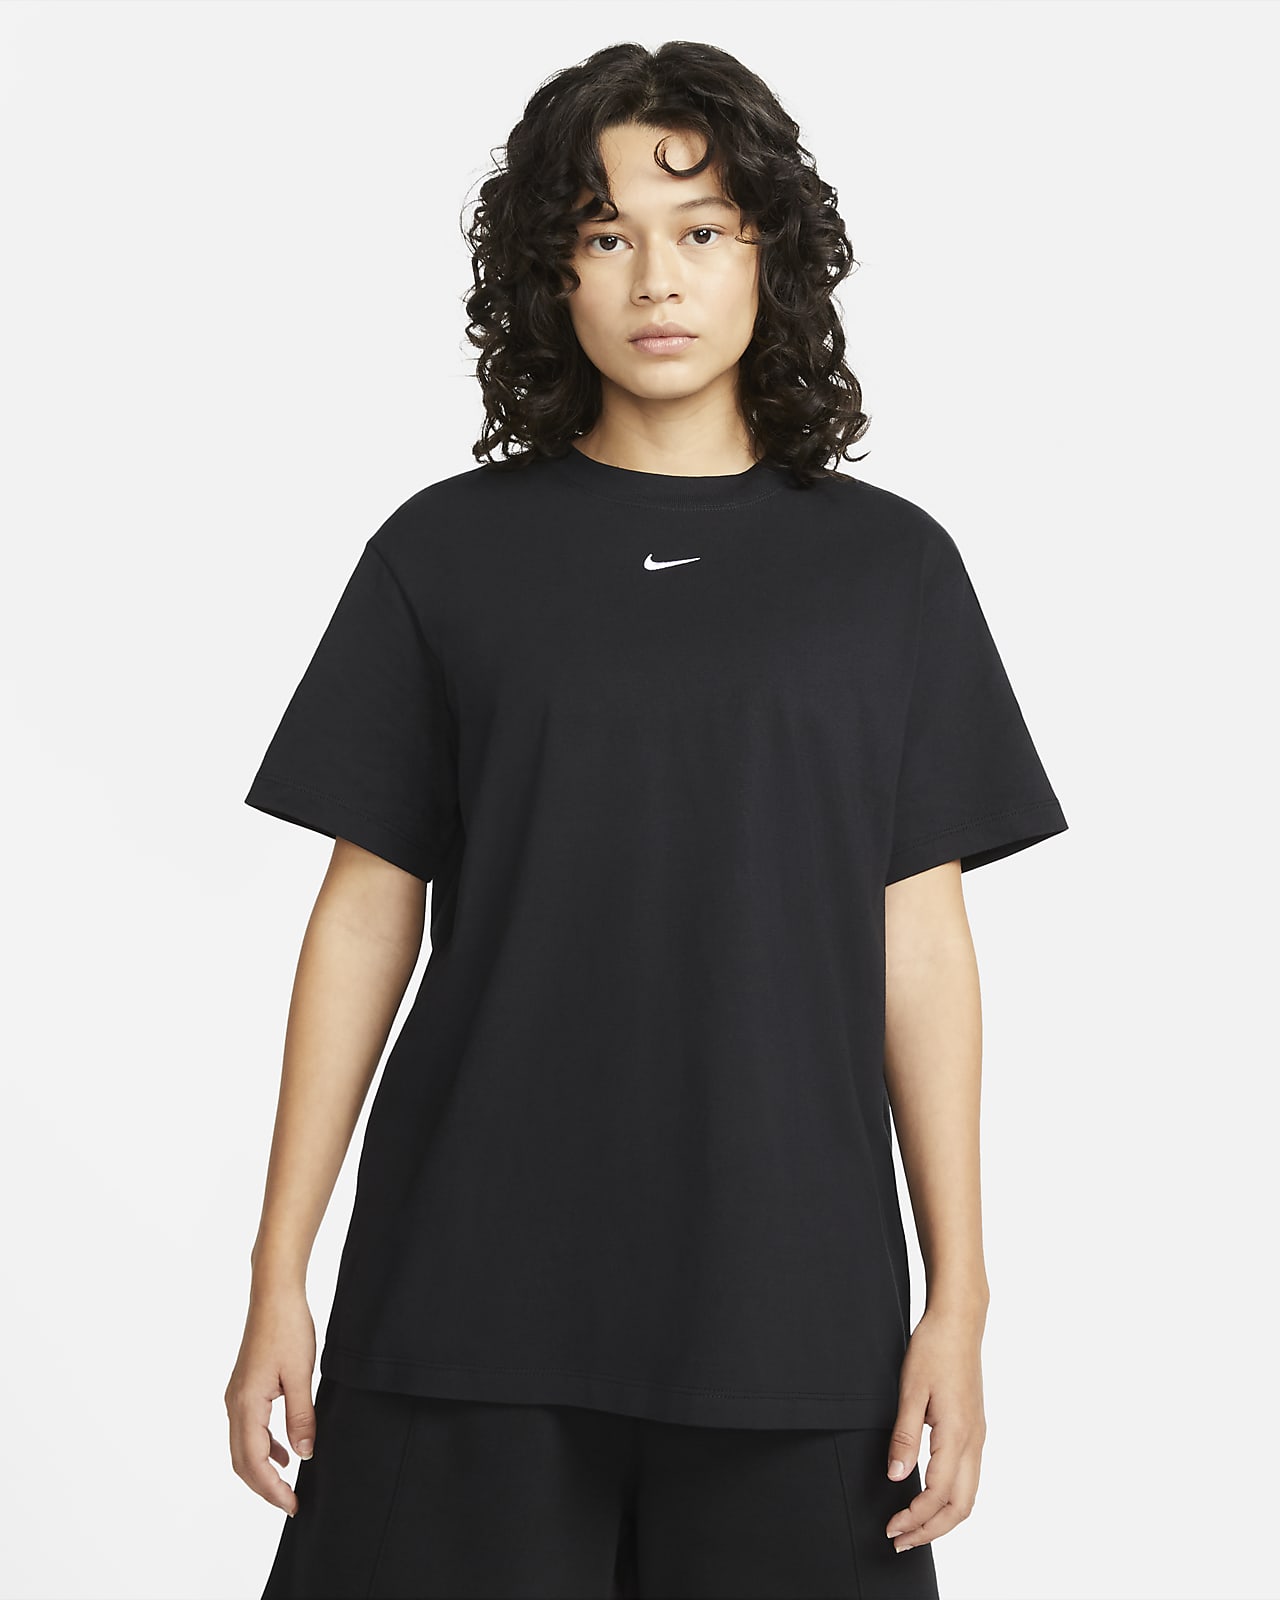 Stier manipuleren Verdikken Nike Sportswear Essentials T-shirt voor dames. Nike NL